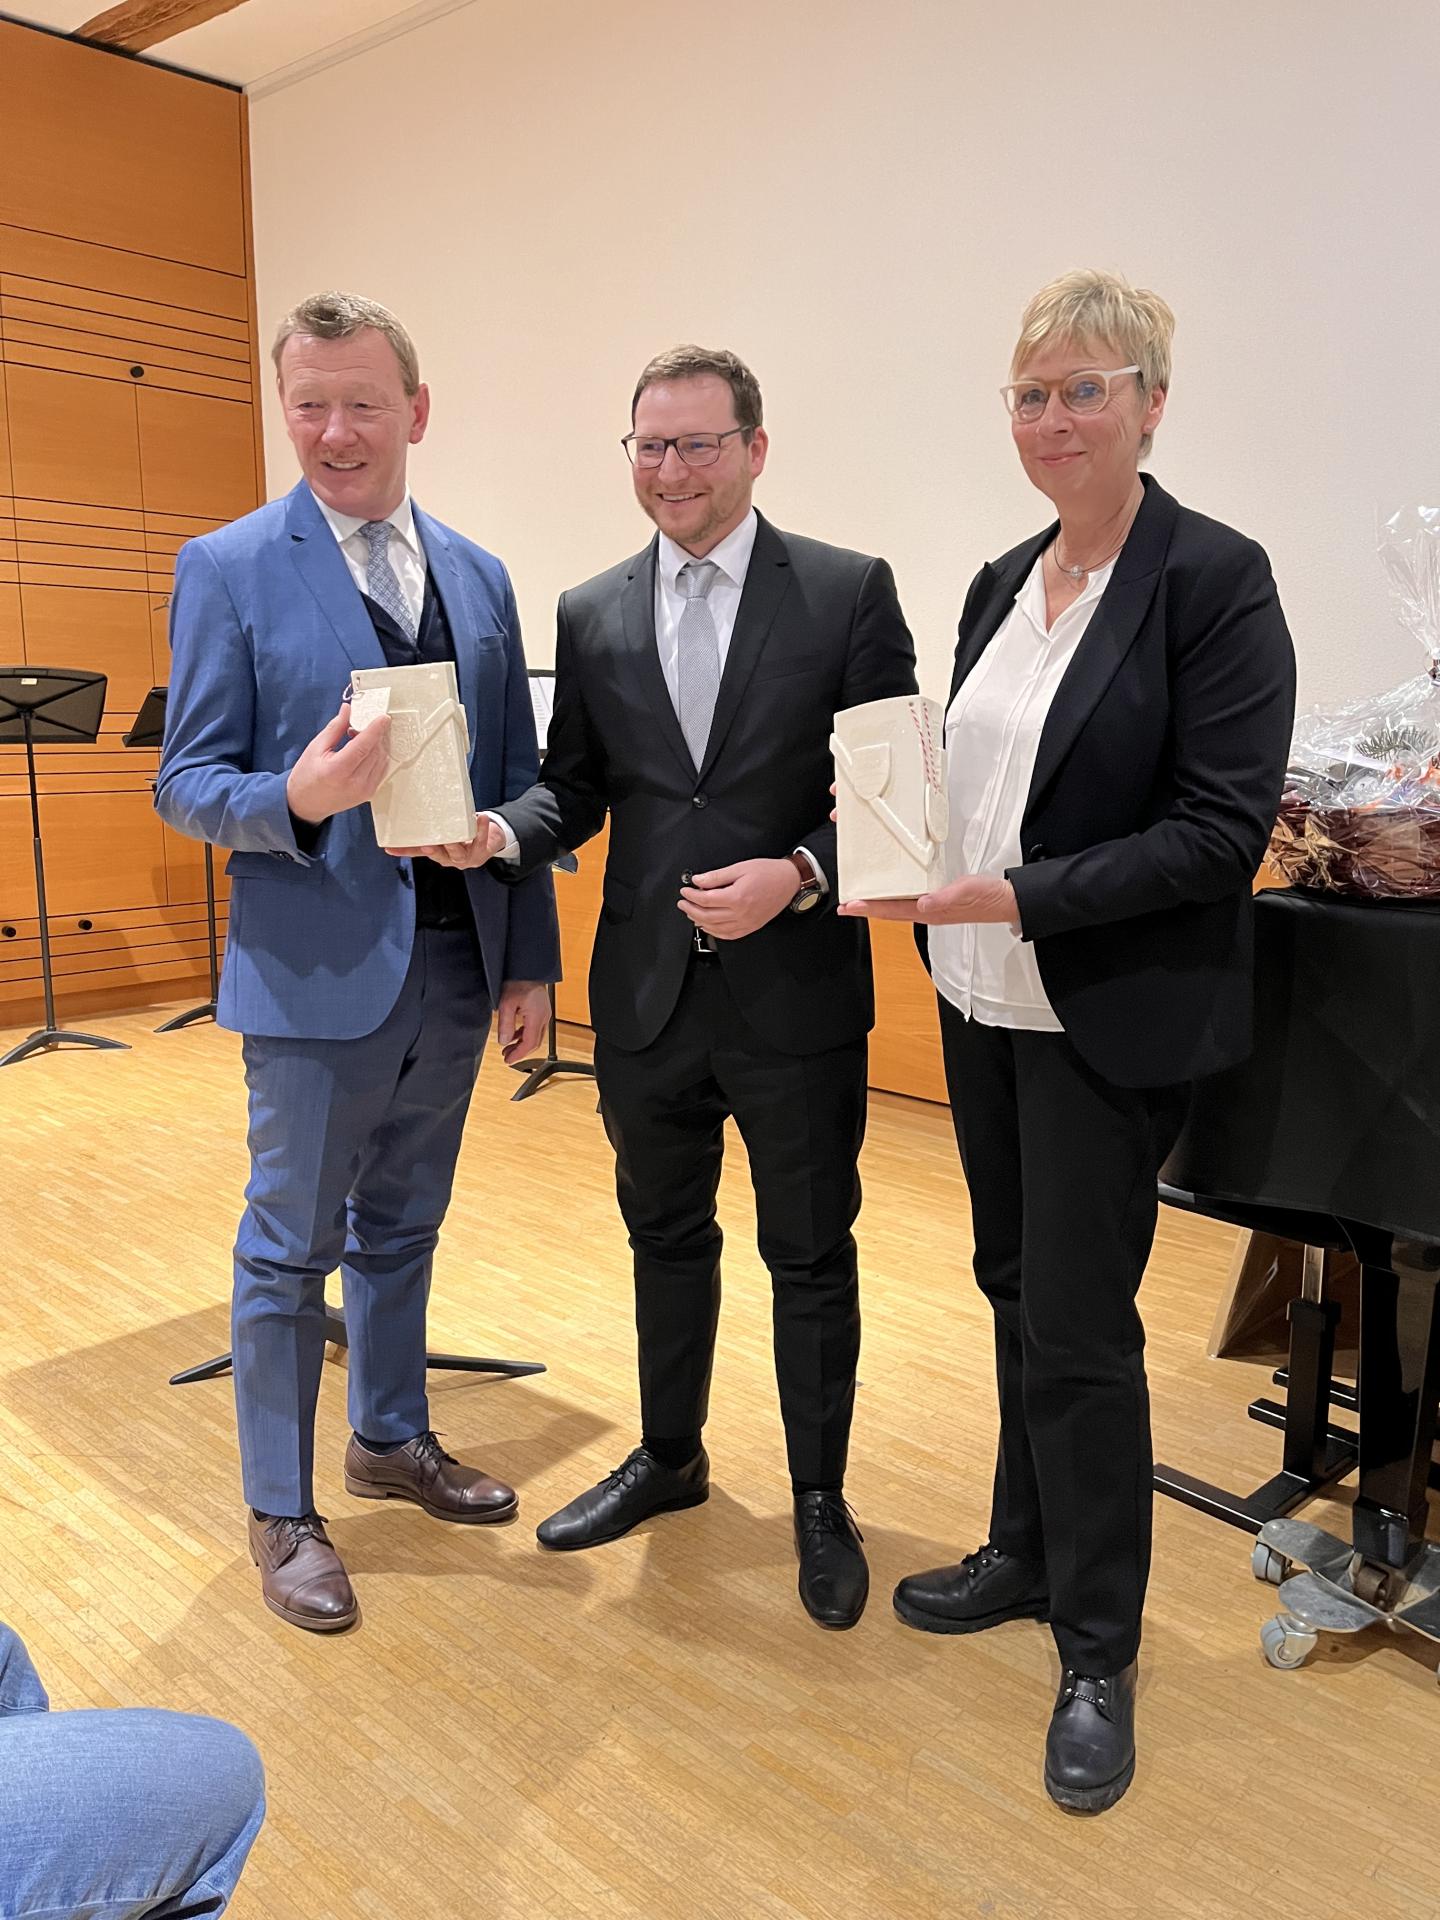 v.l. Bürgermeister Peter Juks, Bürgermeister Robert Zillmann, Bürgermeisterin Ulrike Drossel © Gemeinde Holzwickede